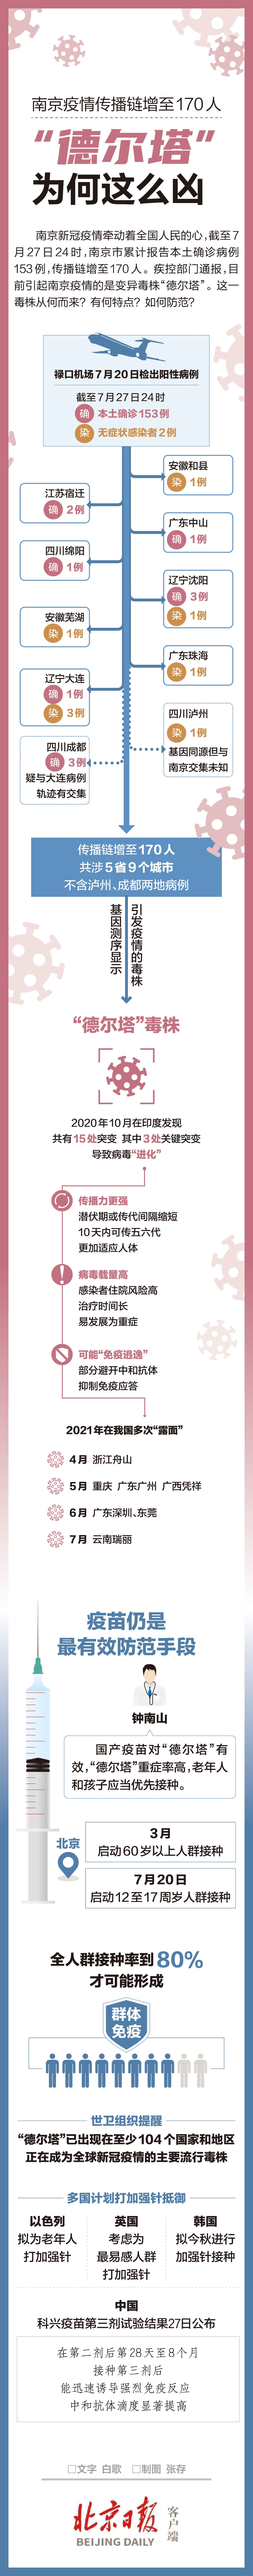 一图读懂 | 南京传播链增至170人，“德尔塔”如何防范